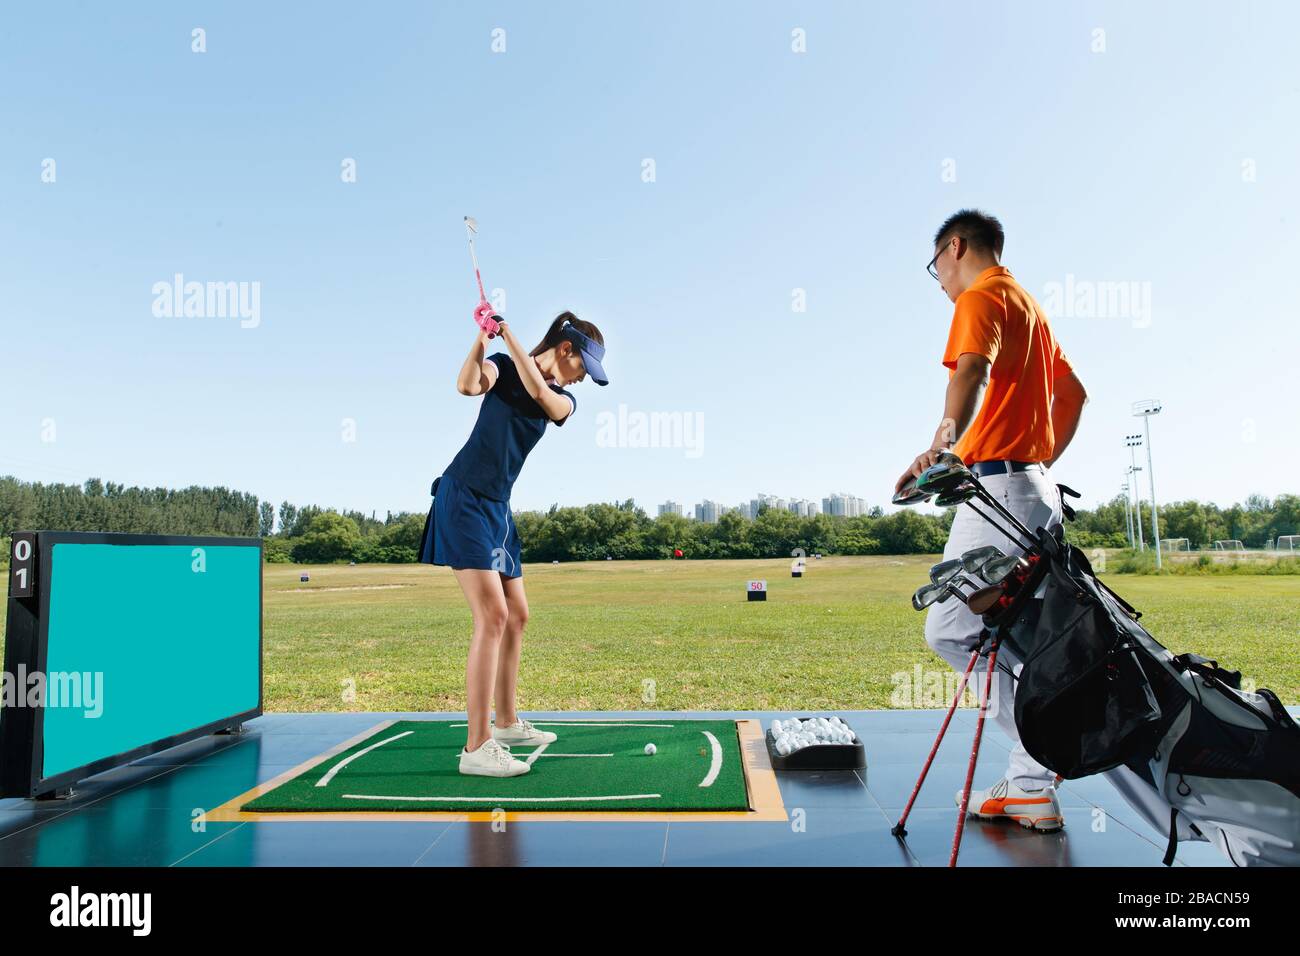 Le champ de pratique de l'entraînement de la jeune femme pour jouer au golf Banque D'Images